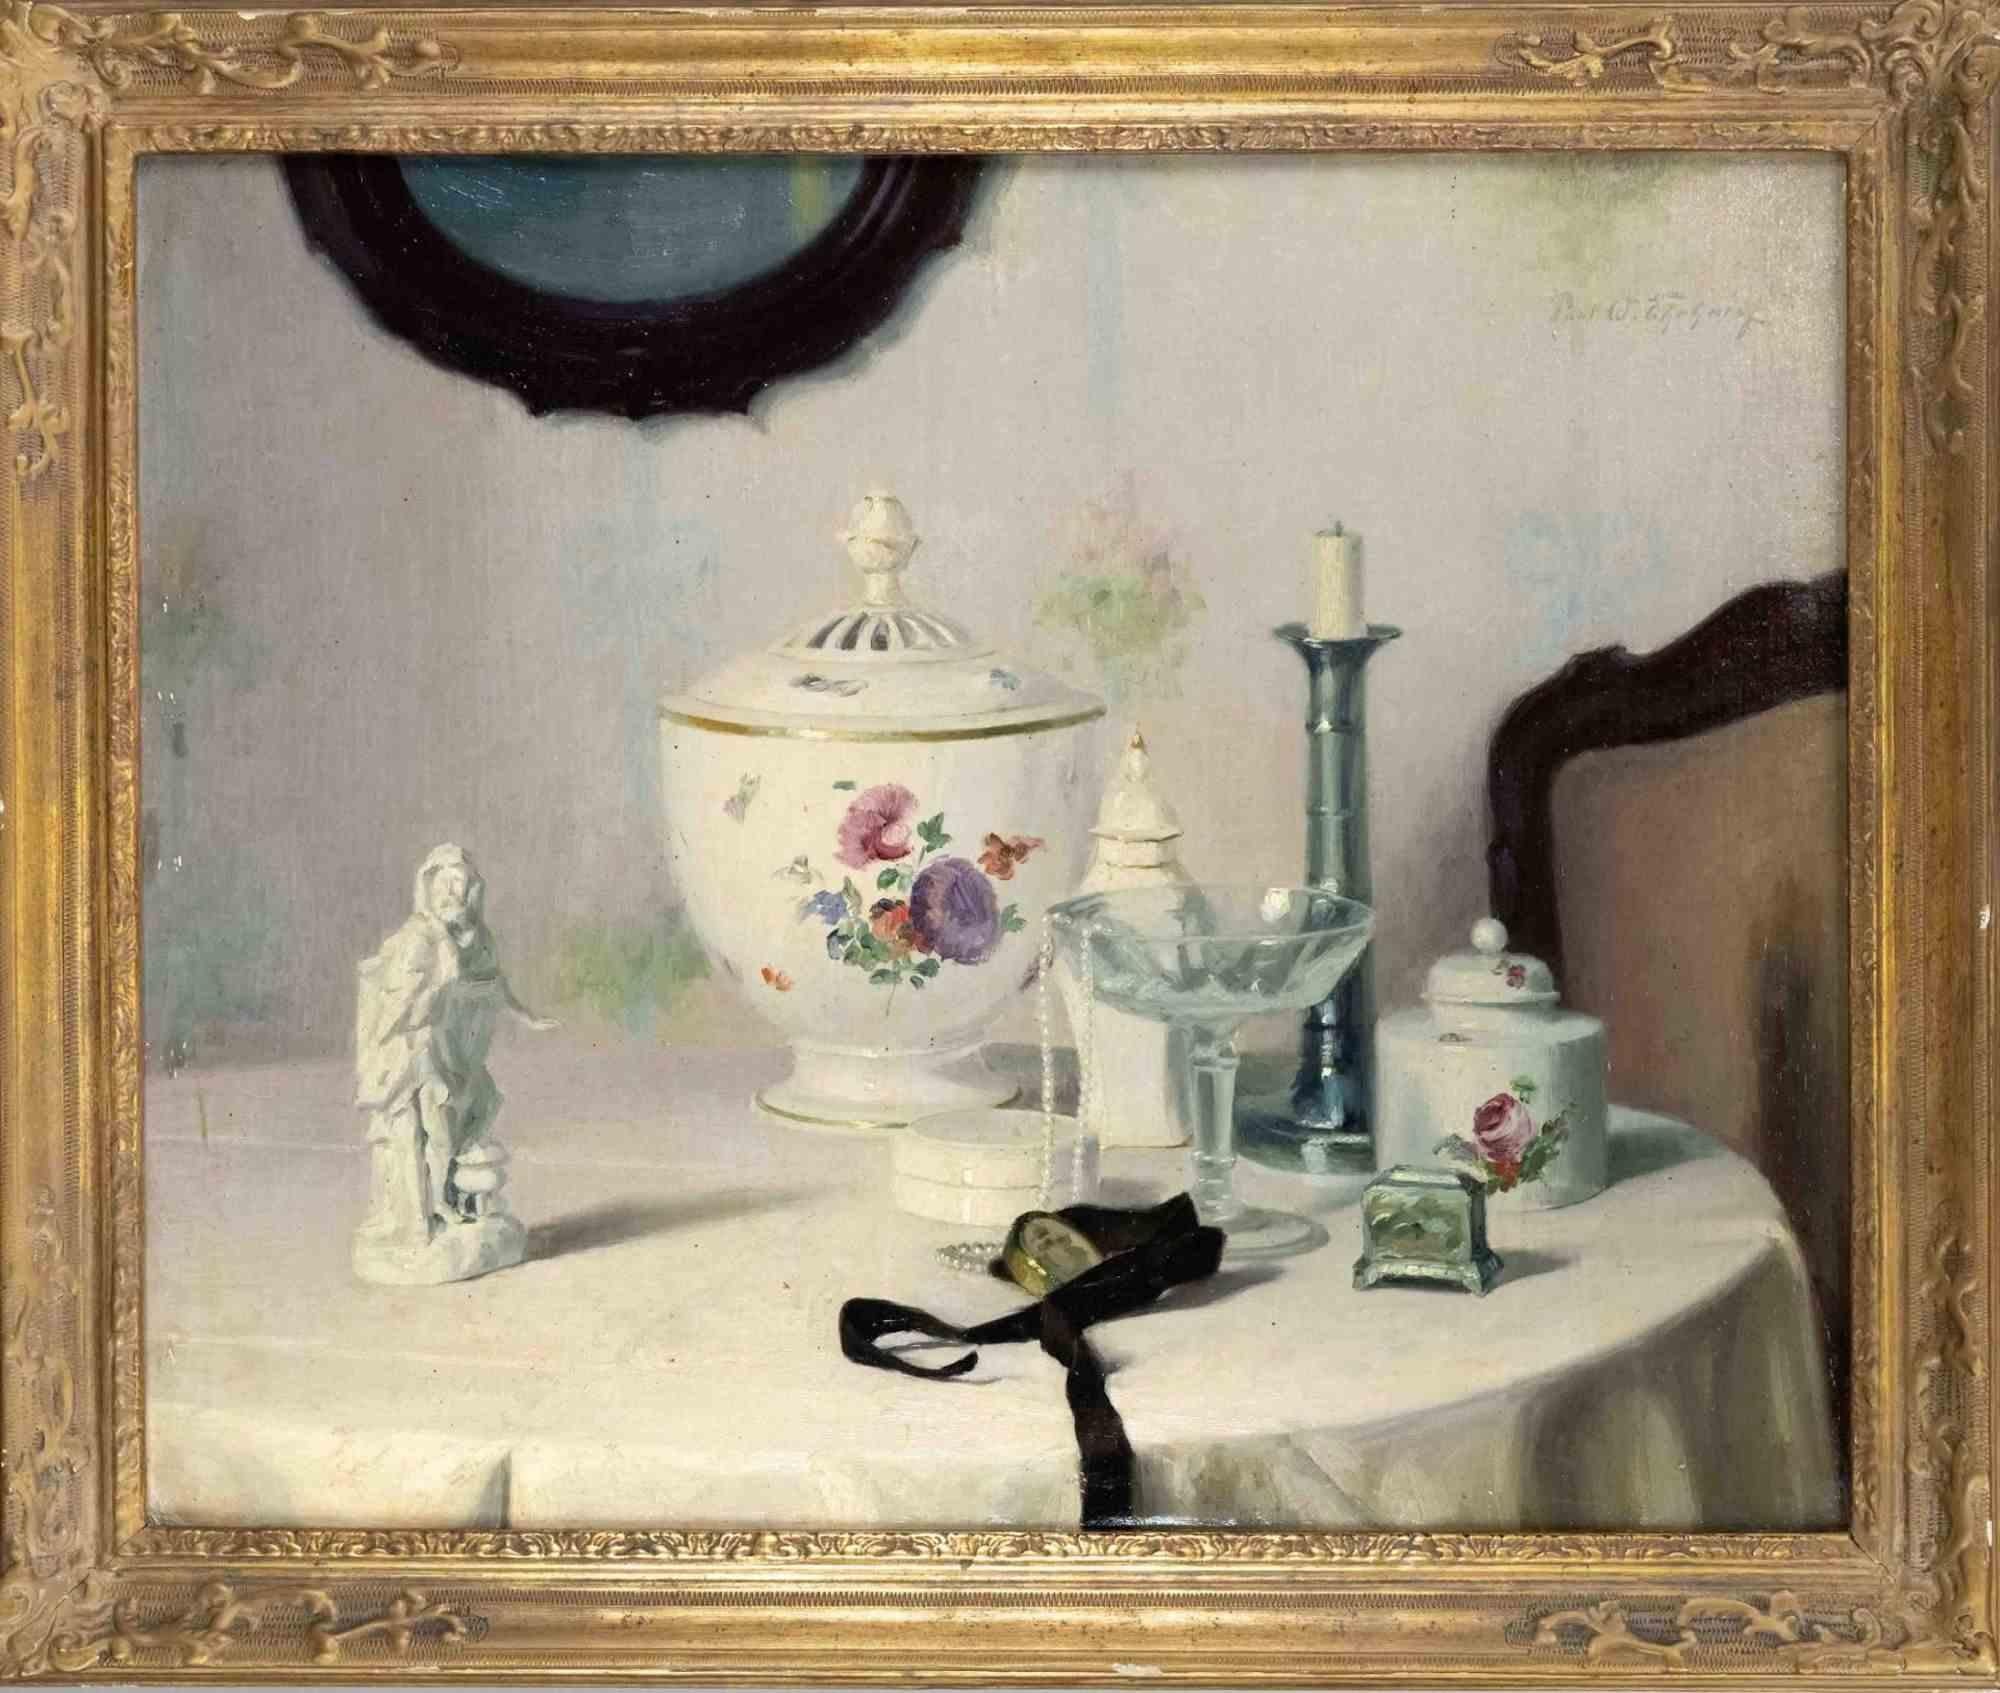 Nature morte avec verre et porcelaine est une œuvre d'art réalisée par Paul Walter Erhardt (1872-1959).

Huile sur toile, signée en haut à droite.

60 x 75 cm, encadré 72 x 87 cm. 

Bonnes conditions.